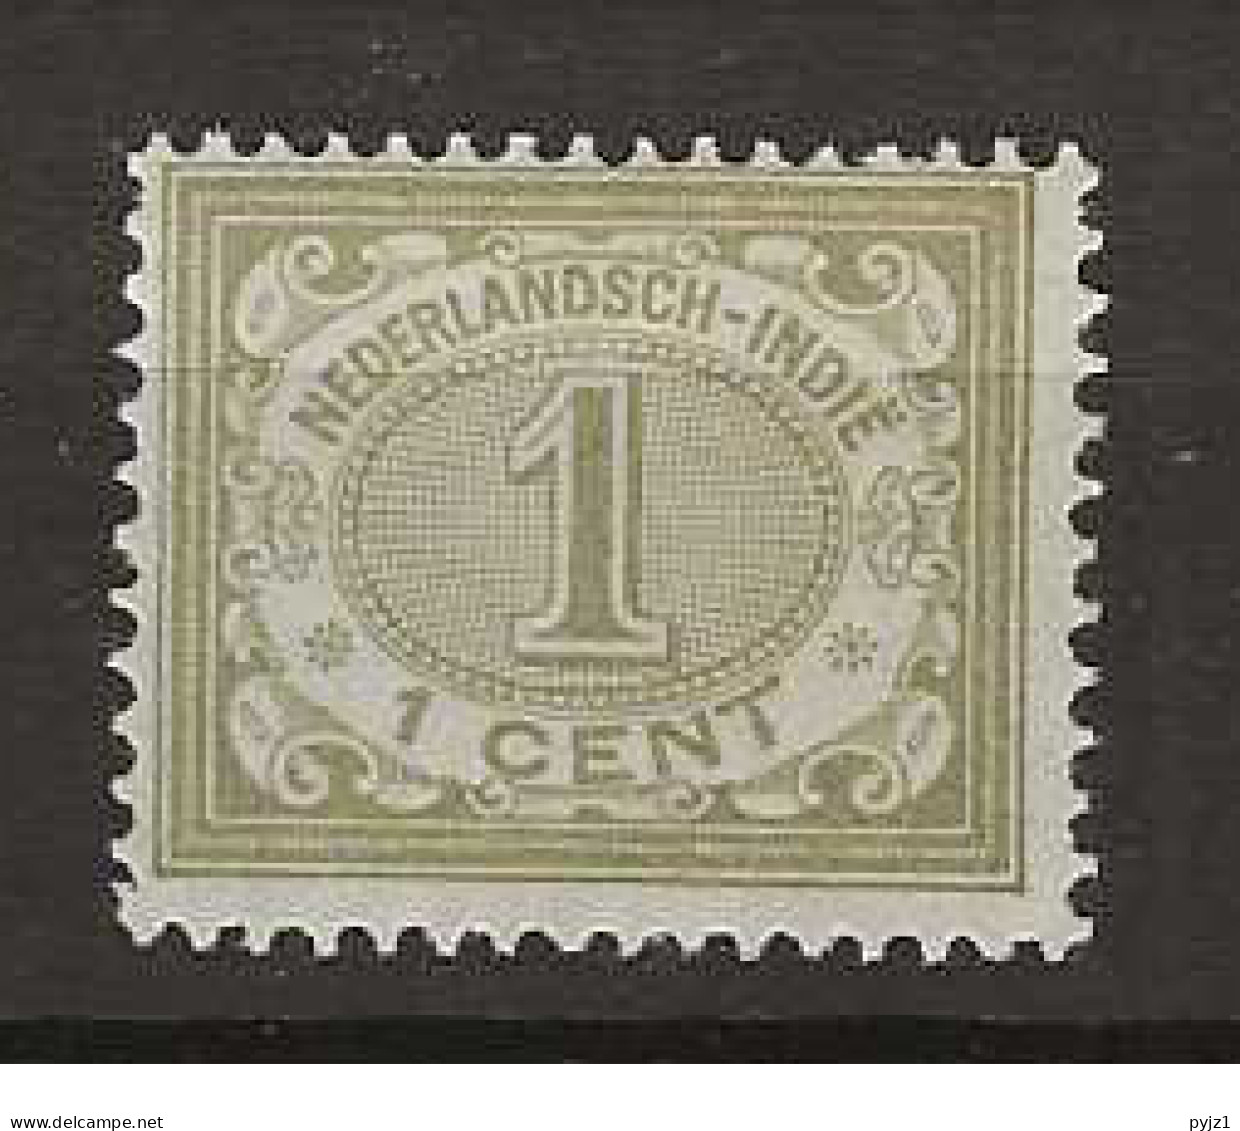 1902 MH Nederlands Indië NVPH 41 - Niederländisch-Indien